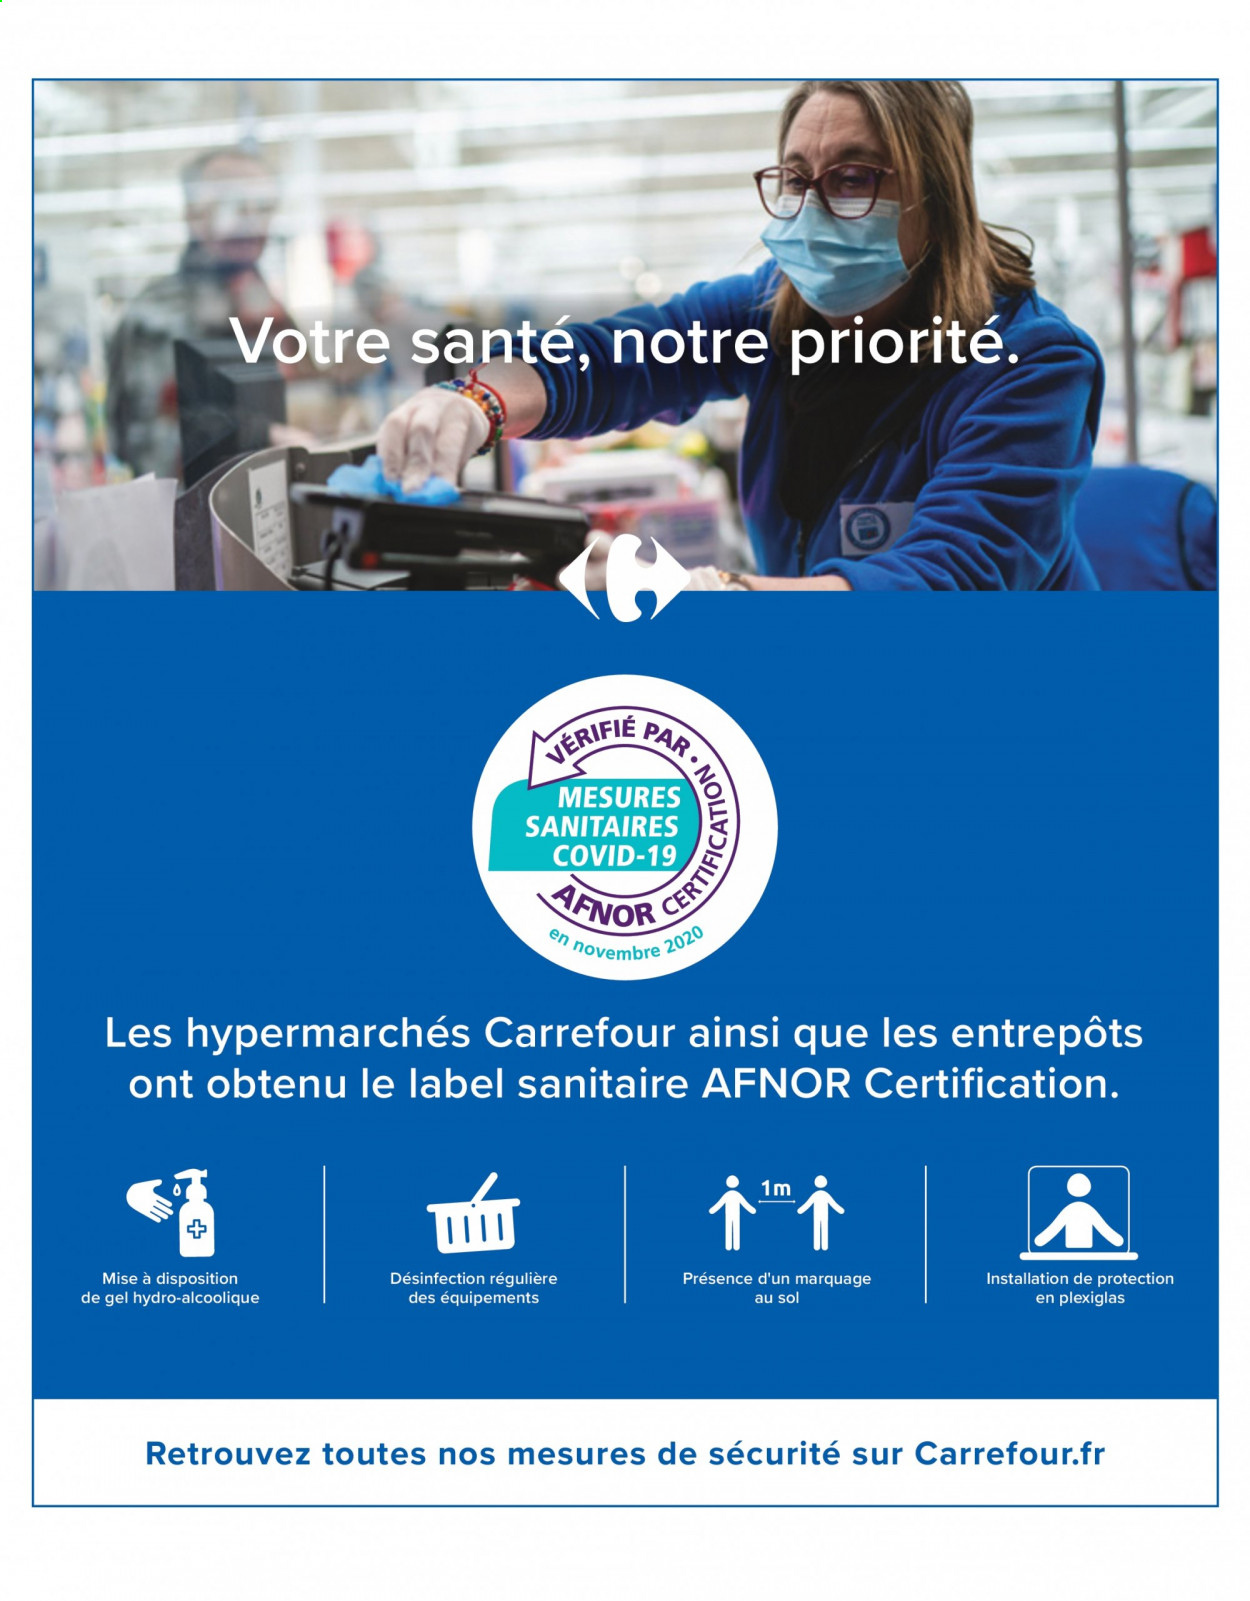 Catalogue Carrefour Hypermarchés - 18.05.2021 - 14.06.2021. 